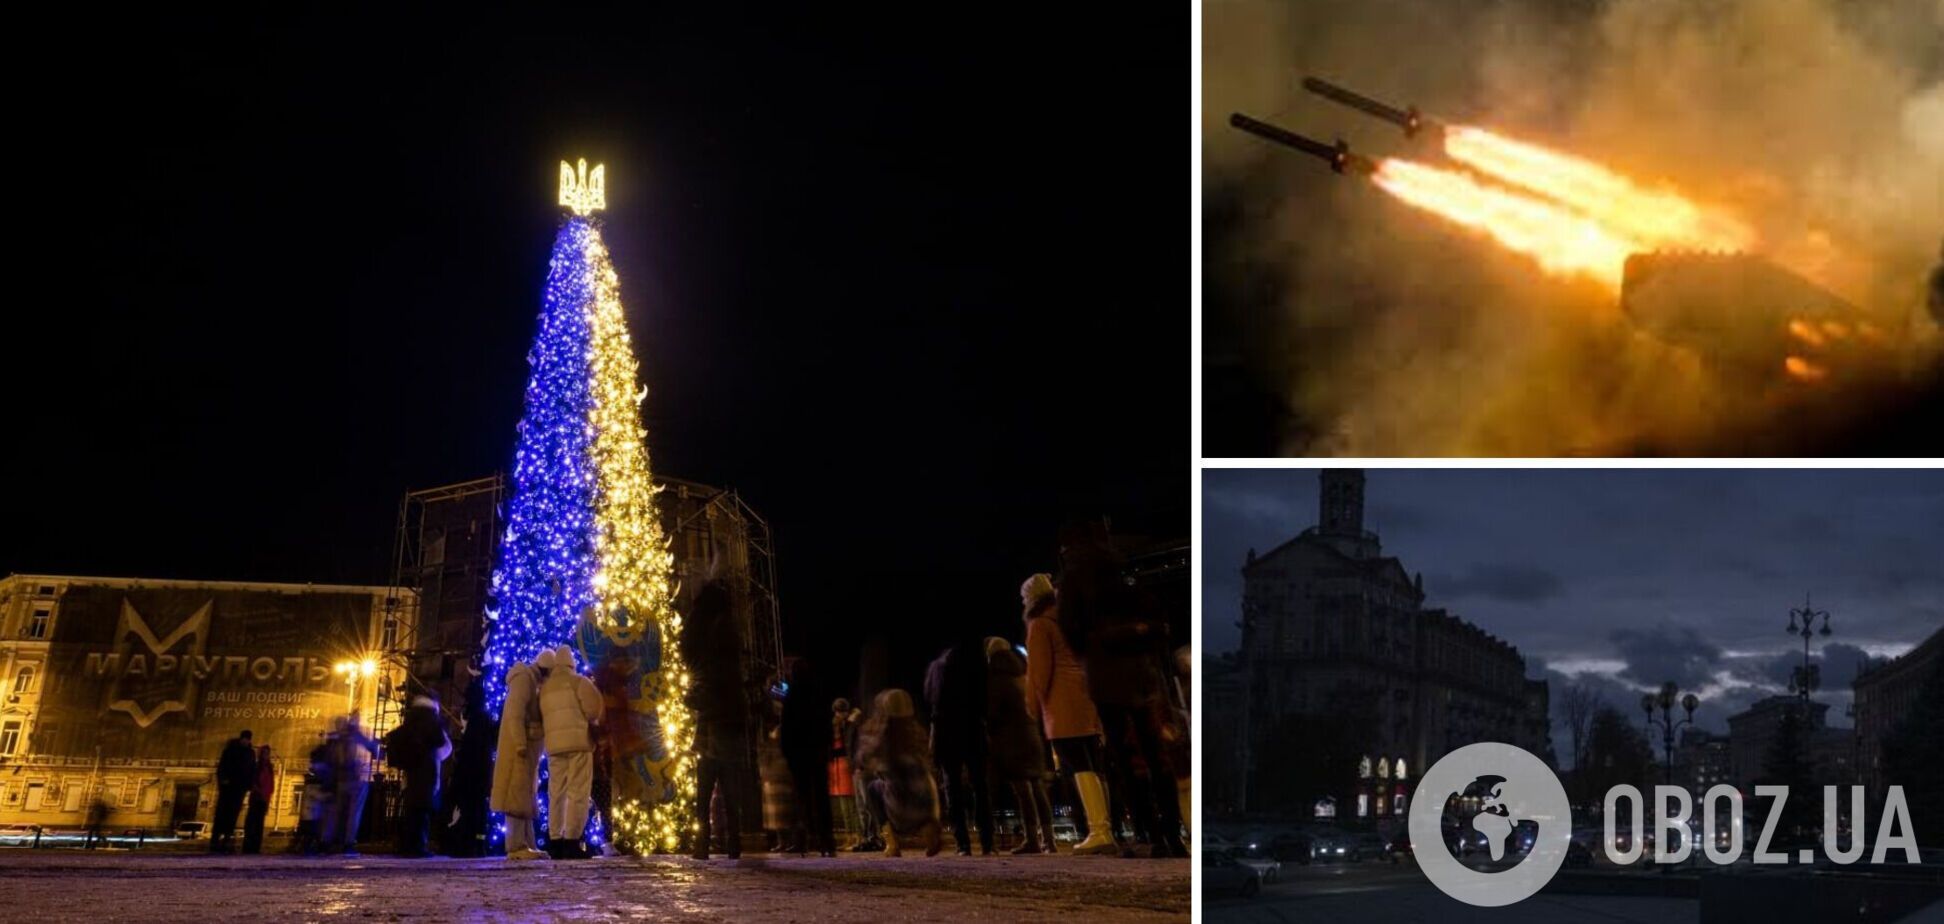 Россия еще может сделать так, чтобы Новый год мы встречали в темноте, – Зеленский о возможных новых атаках